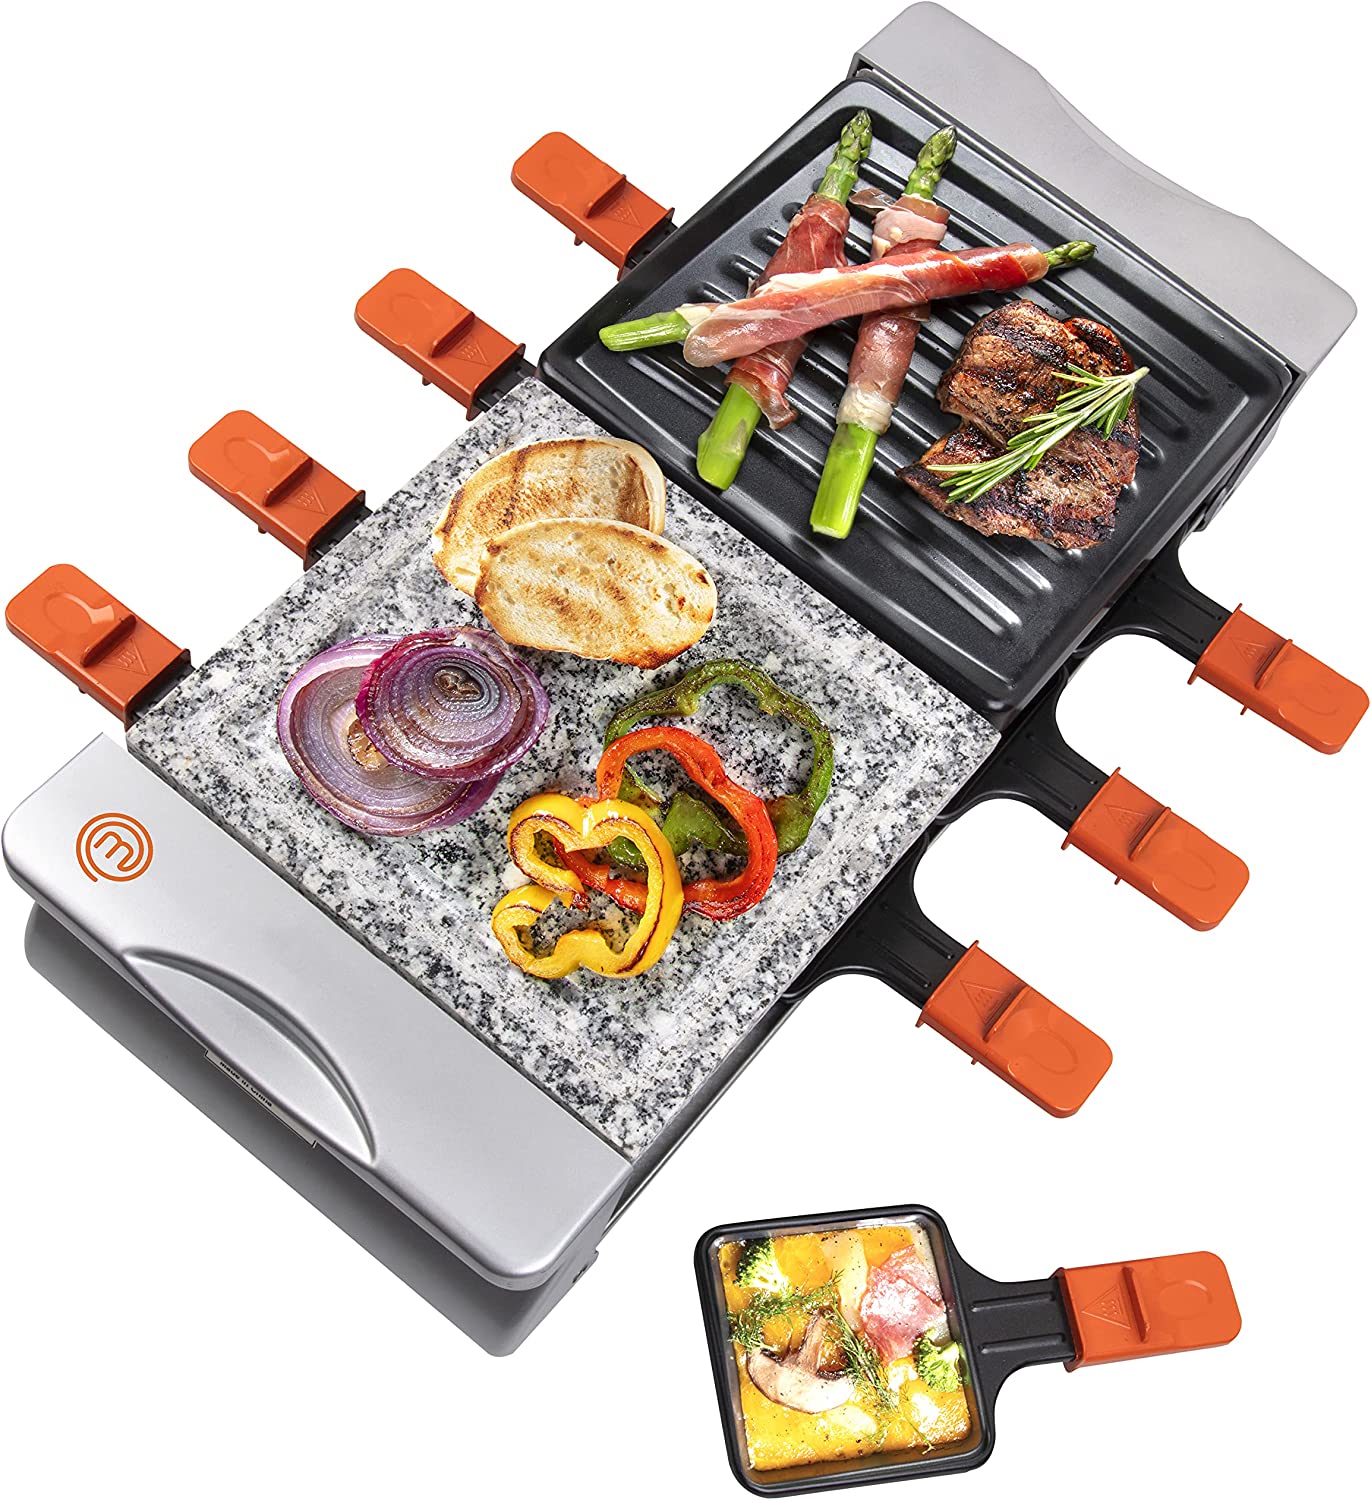 کباب پز مدل MasterChef Dual Raclette Table Grill - ارسال ۱۰ الی ۱۵ روز کاری